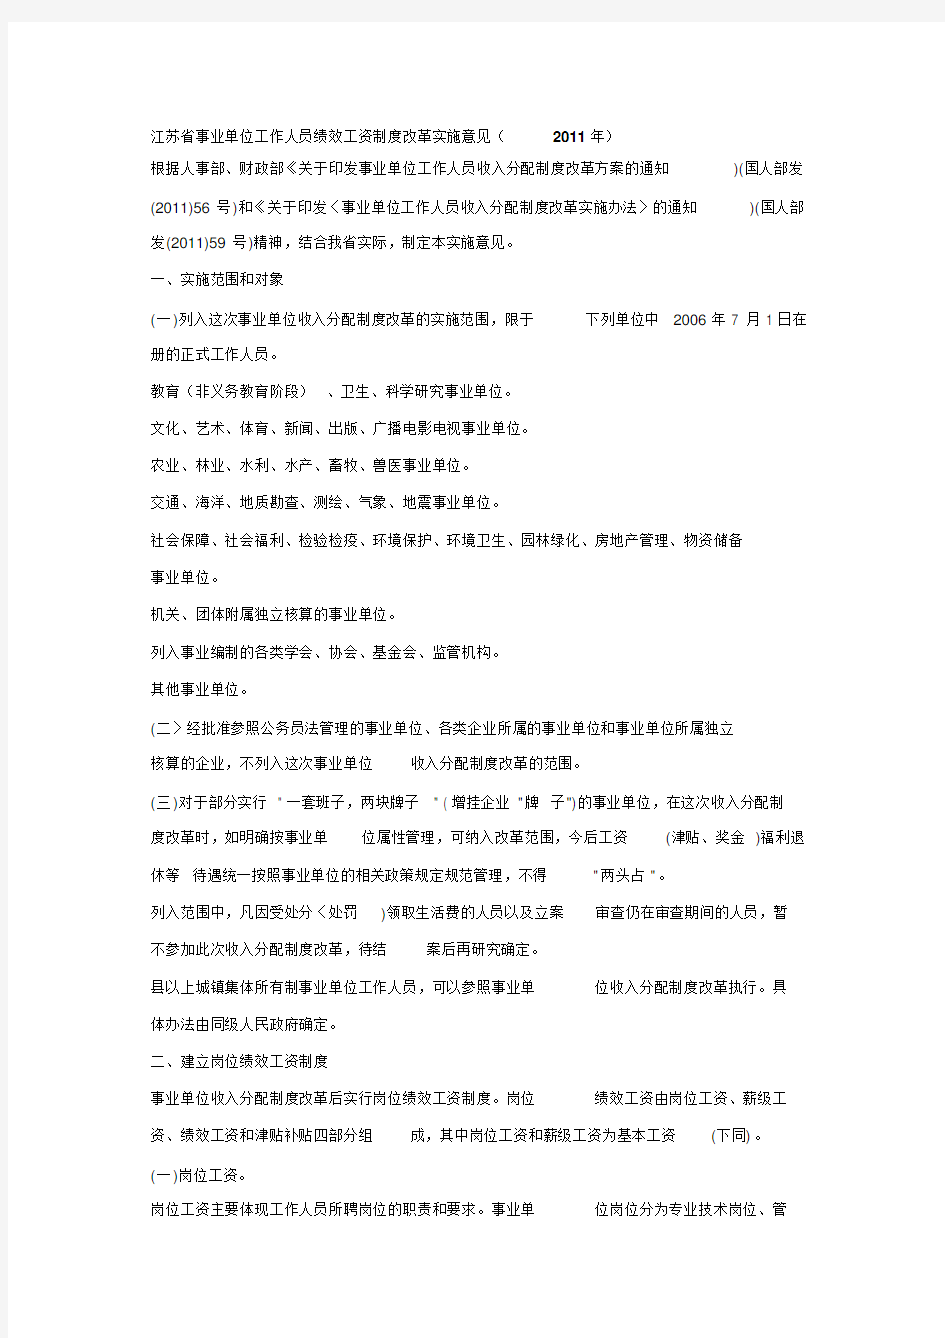 江苏省事业单位工作人员绩效工资制度改革实施意见(XX1年)